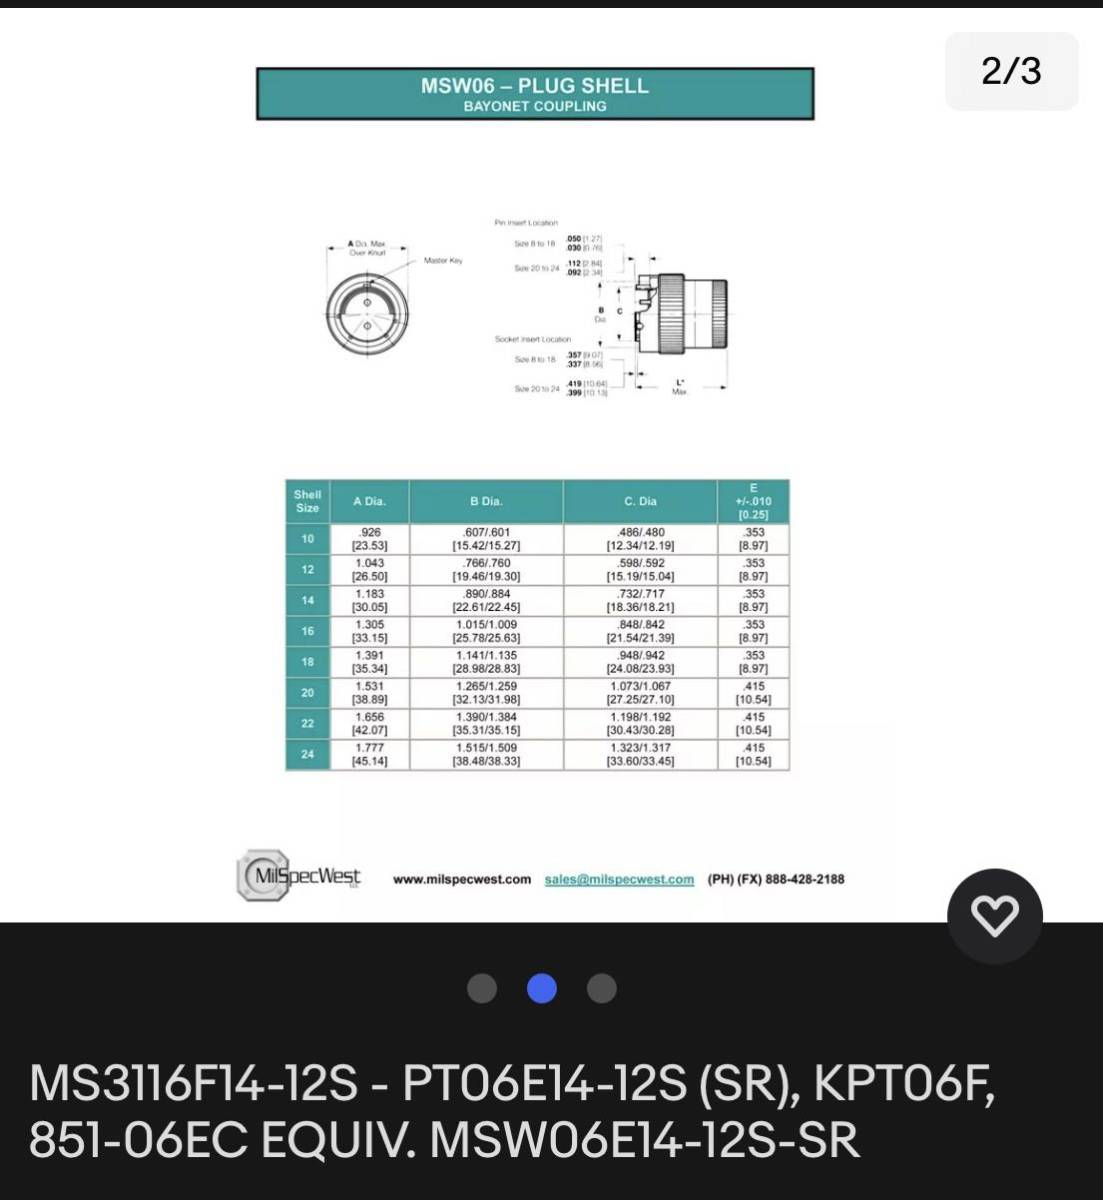 MS3116F14-12S - PT06E14-12S (SR), KPT06F, 851-06EC MSW06E14-12S-SR コネクター未使用_画像2